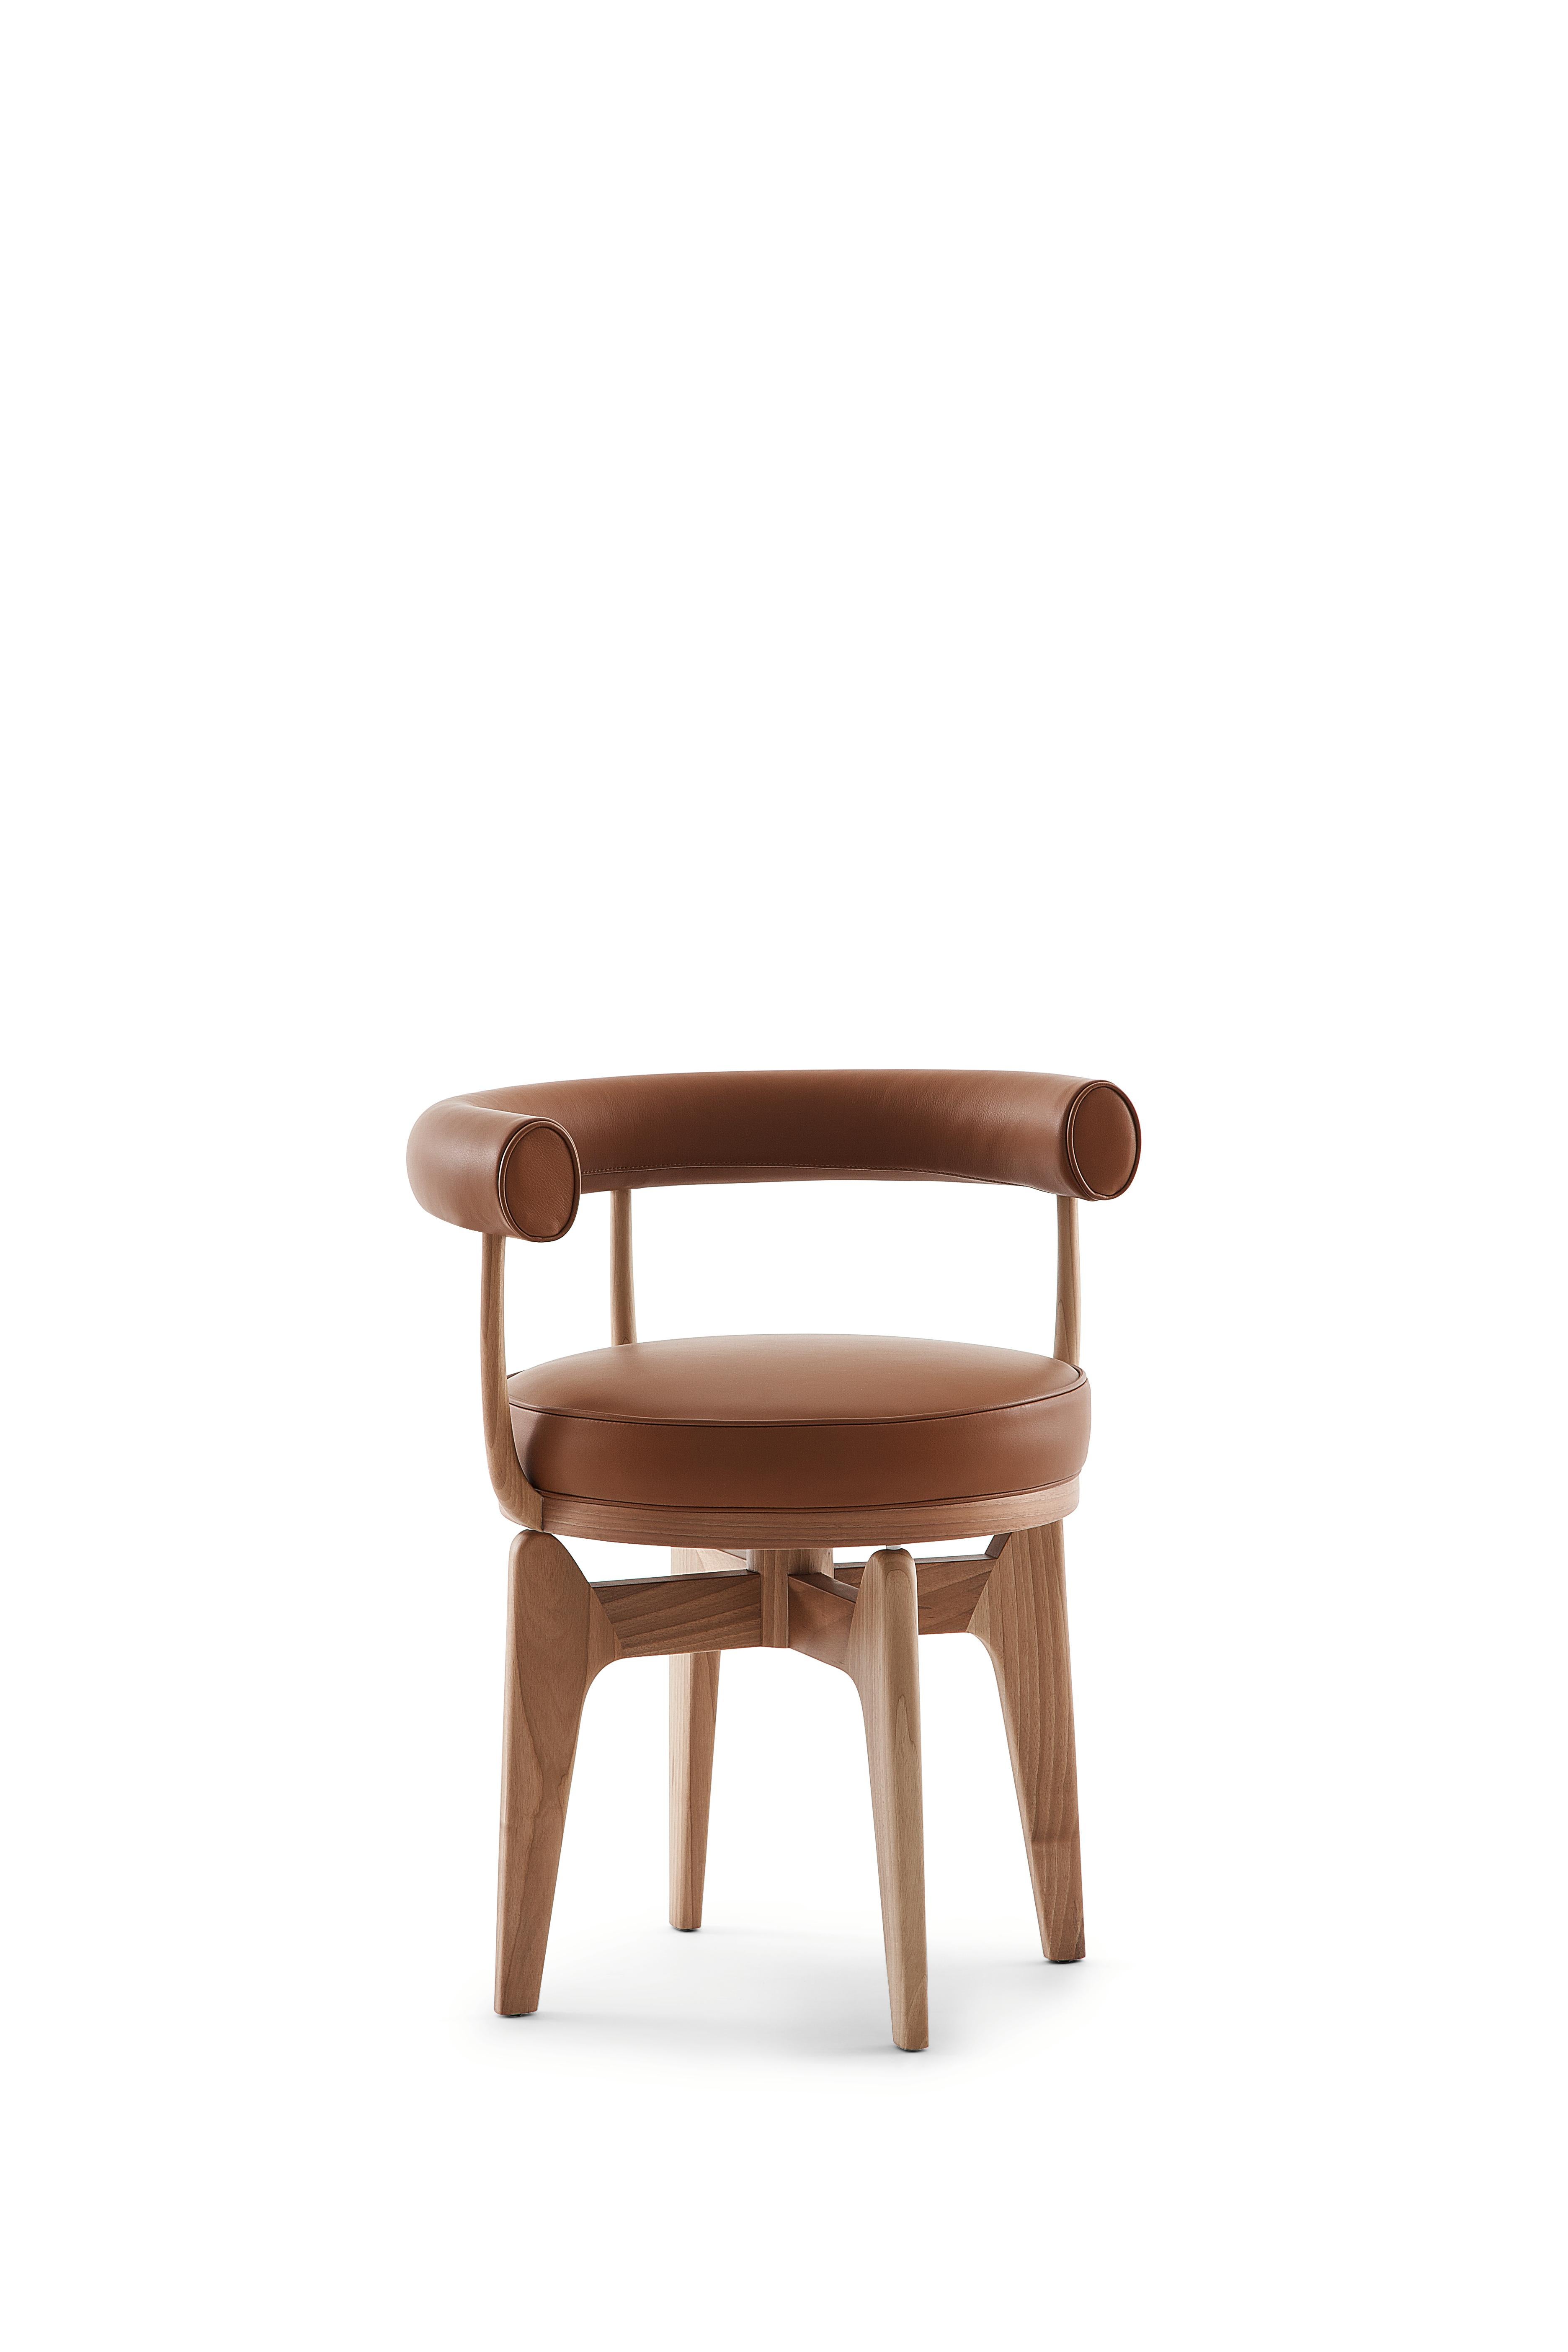 Charlotte Perriand Fauteuil Indochine
Fabriqué par Cassina en Italie.

Ce fauteuil pivotant est une reprise du LC7, dont la structure est en métal tubulaire, œuvre de Charlotte Perriand en 1927. Il a ensuite été exposé avec d'autres meubles que